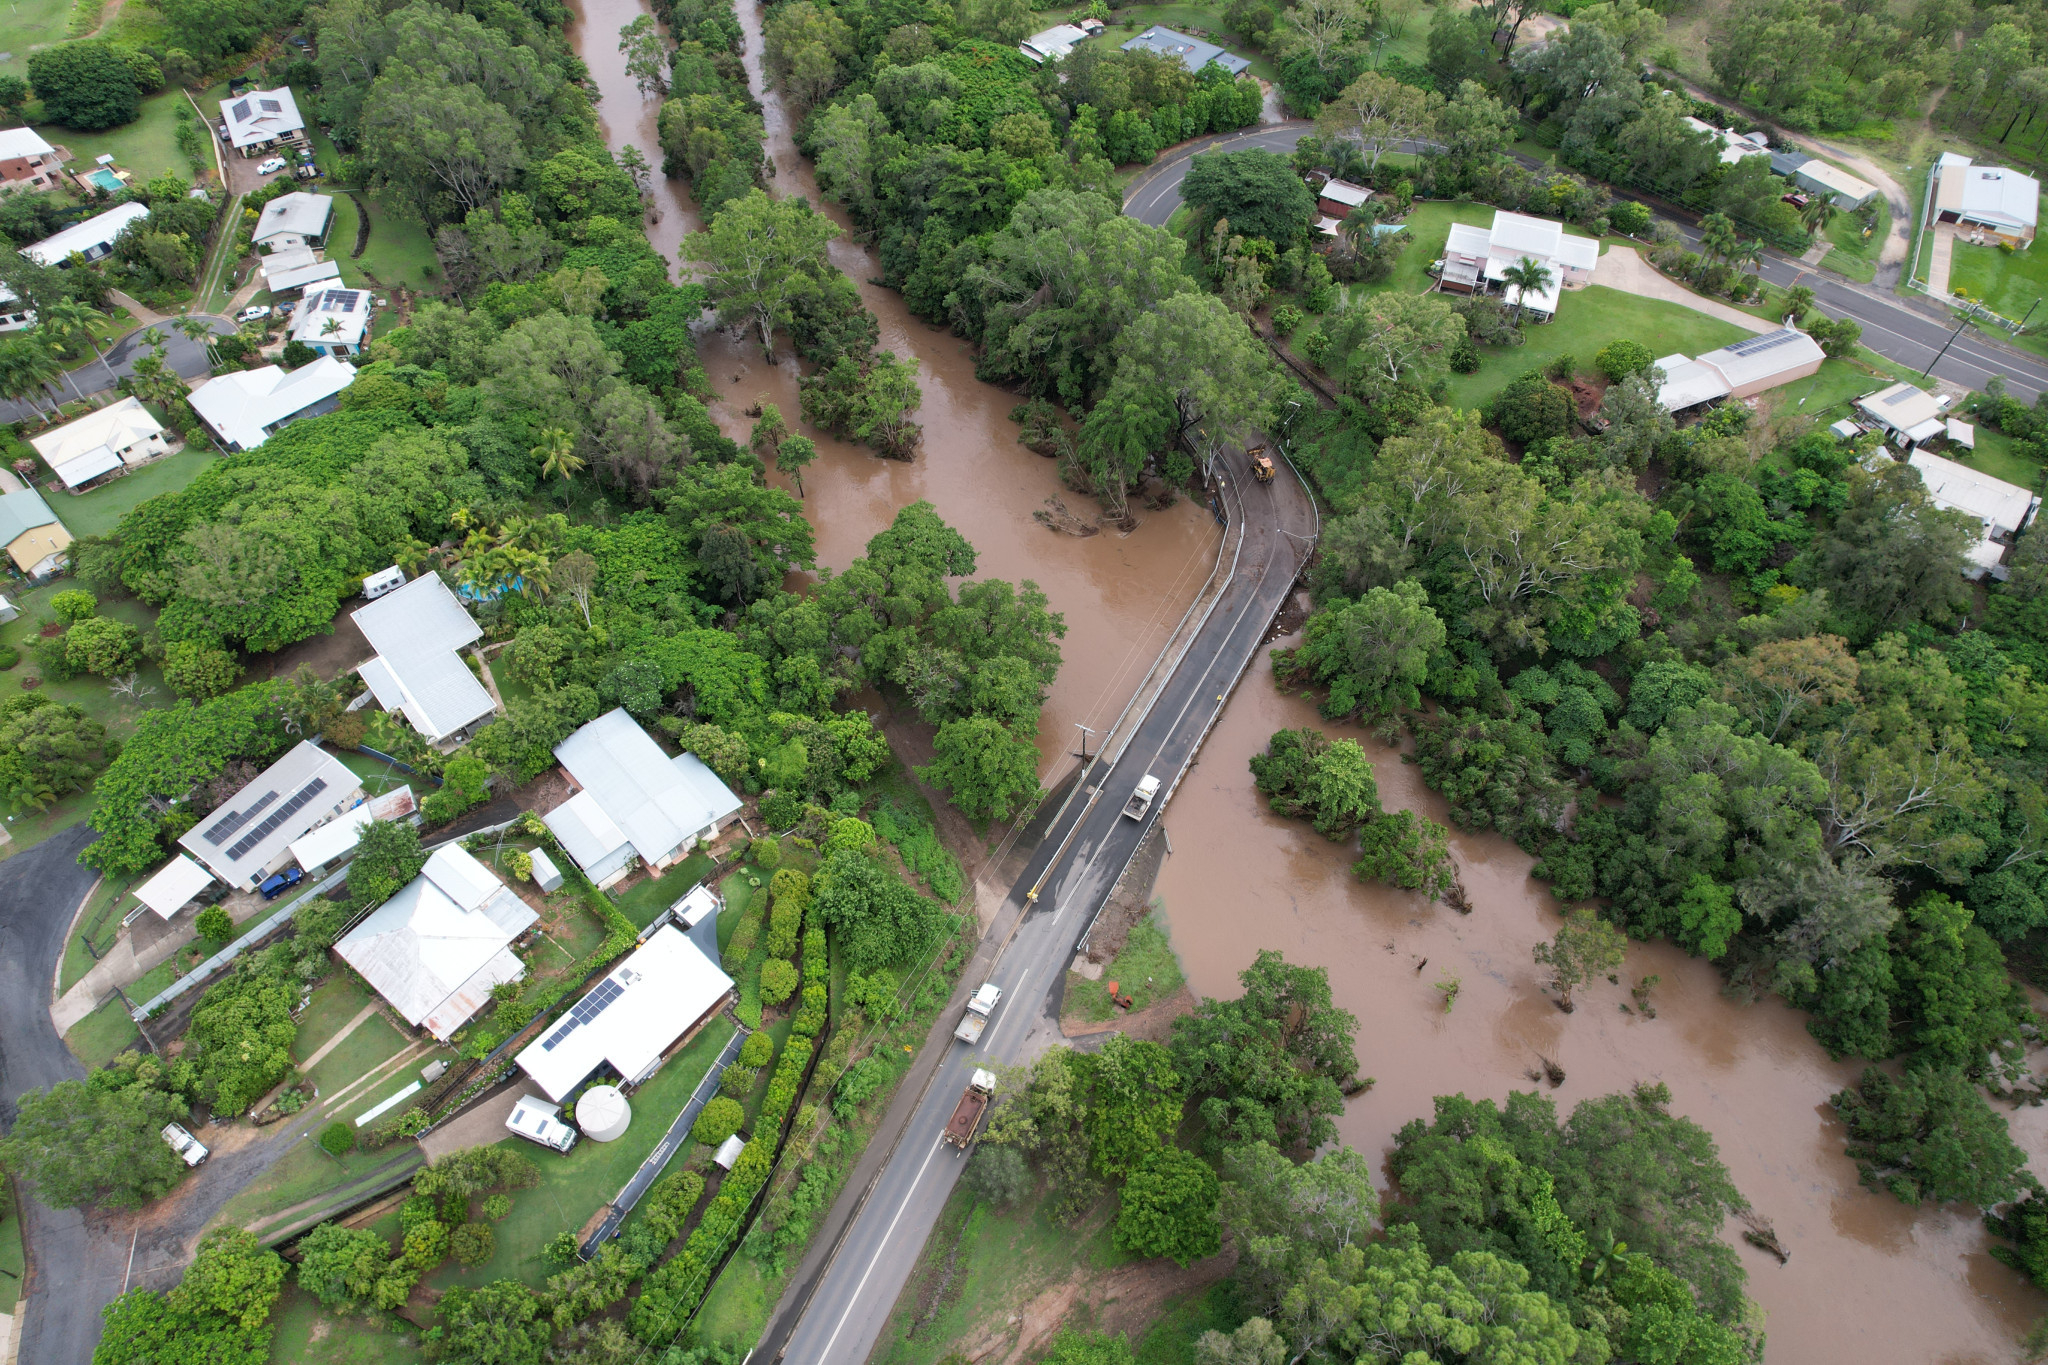 John Doyle Bridge in Mareeba found itself submerged once again on Sunday as heavy rain cascaded through the region.